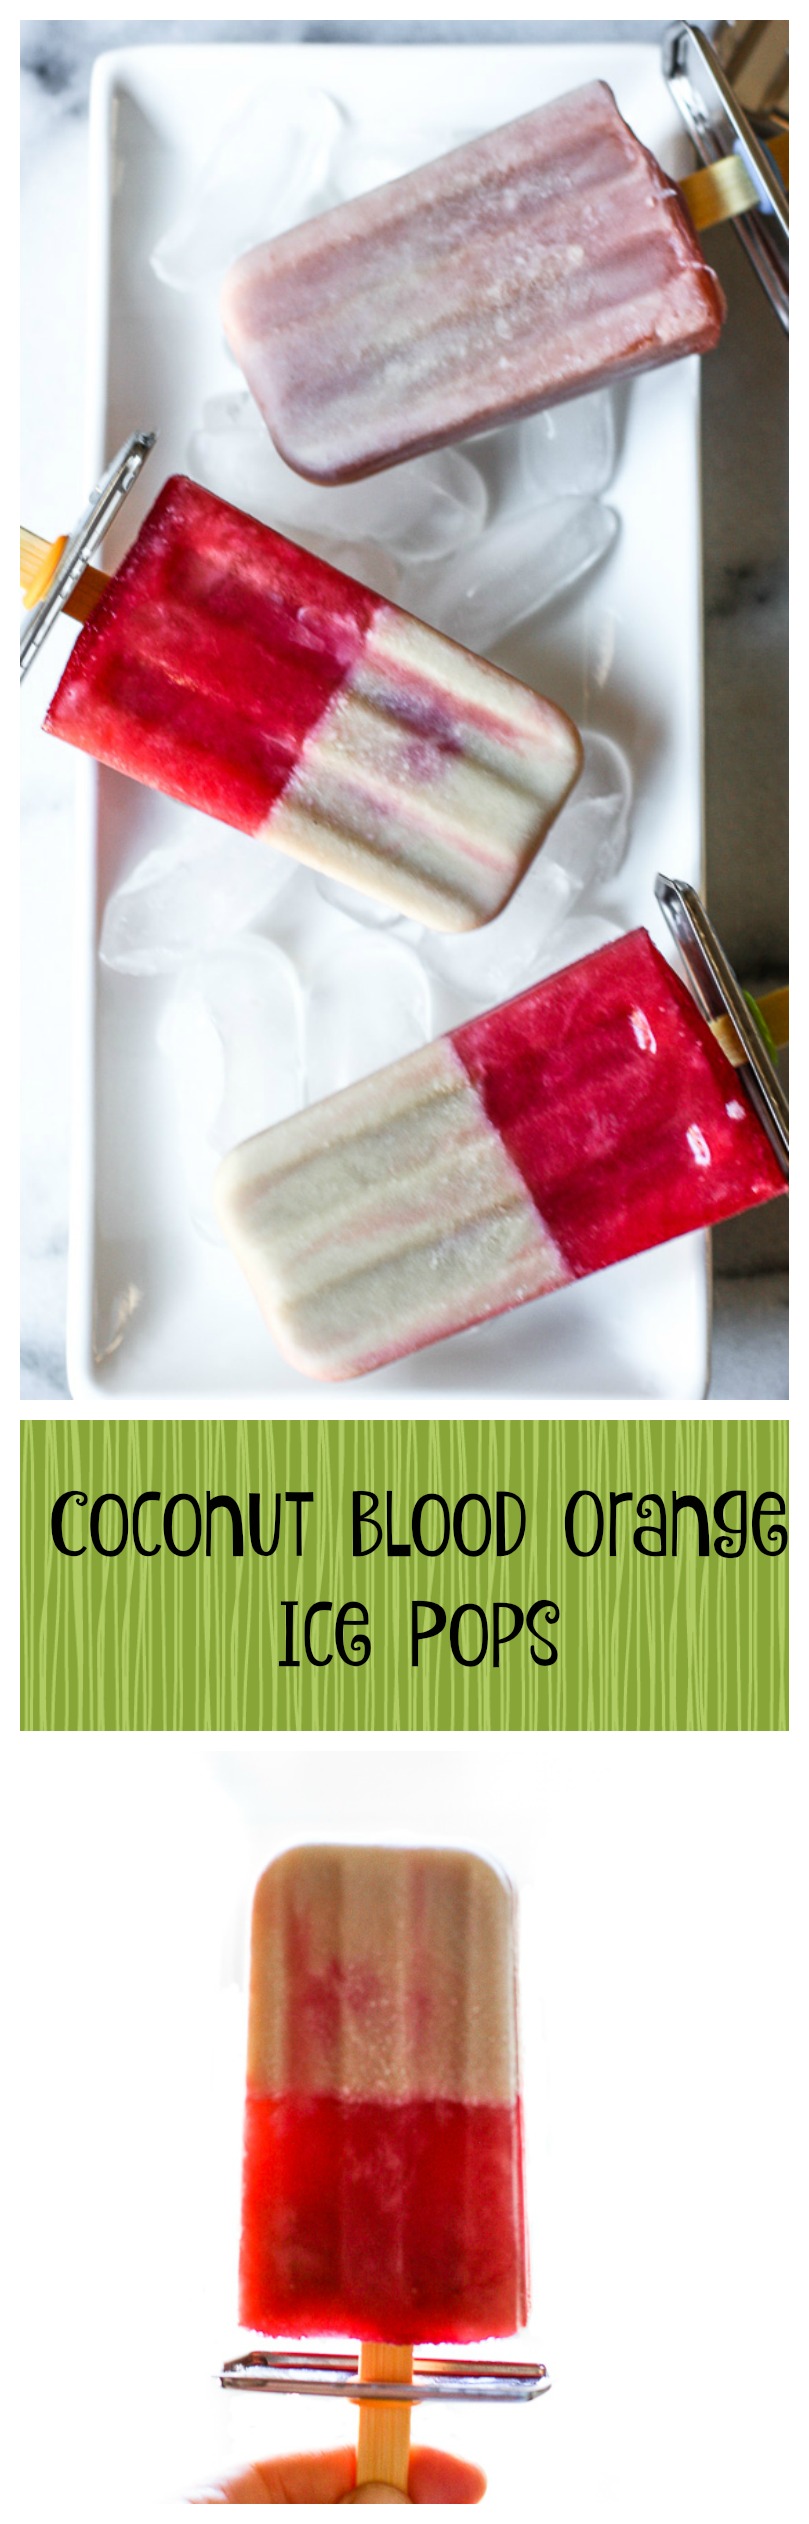 coconut blood orange ice pops